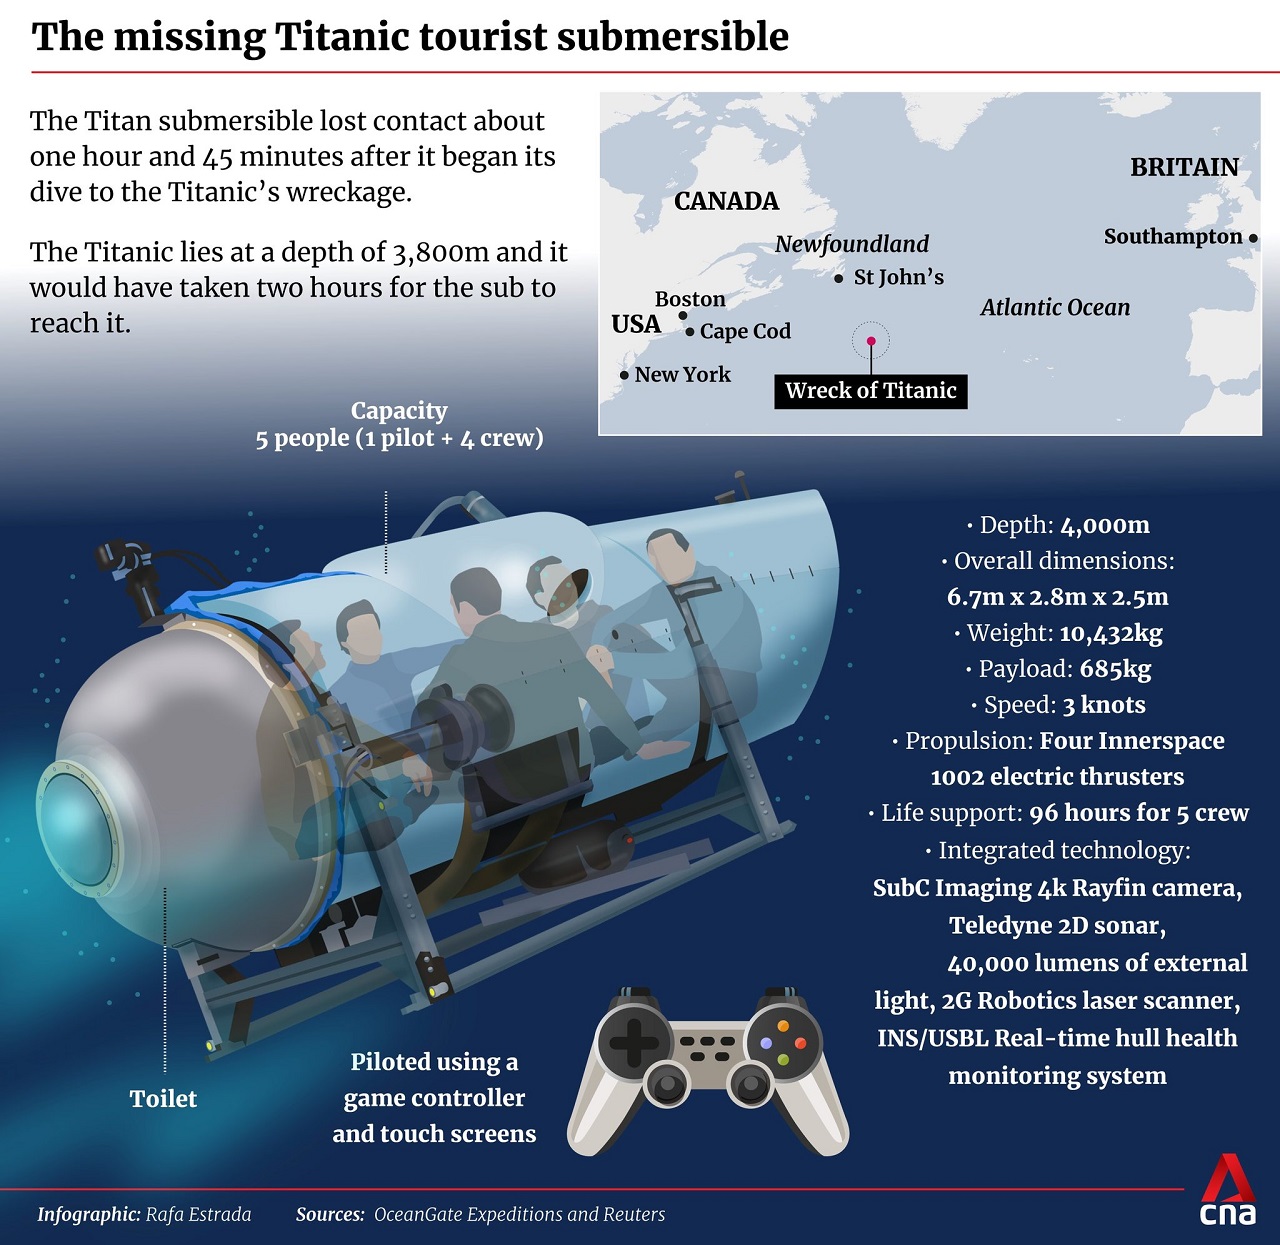 Implózia ponorky Titan. Našli sa zvyšky vraku